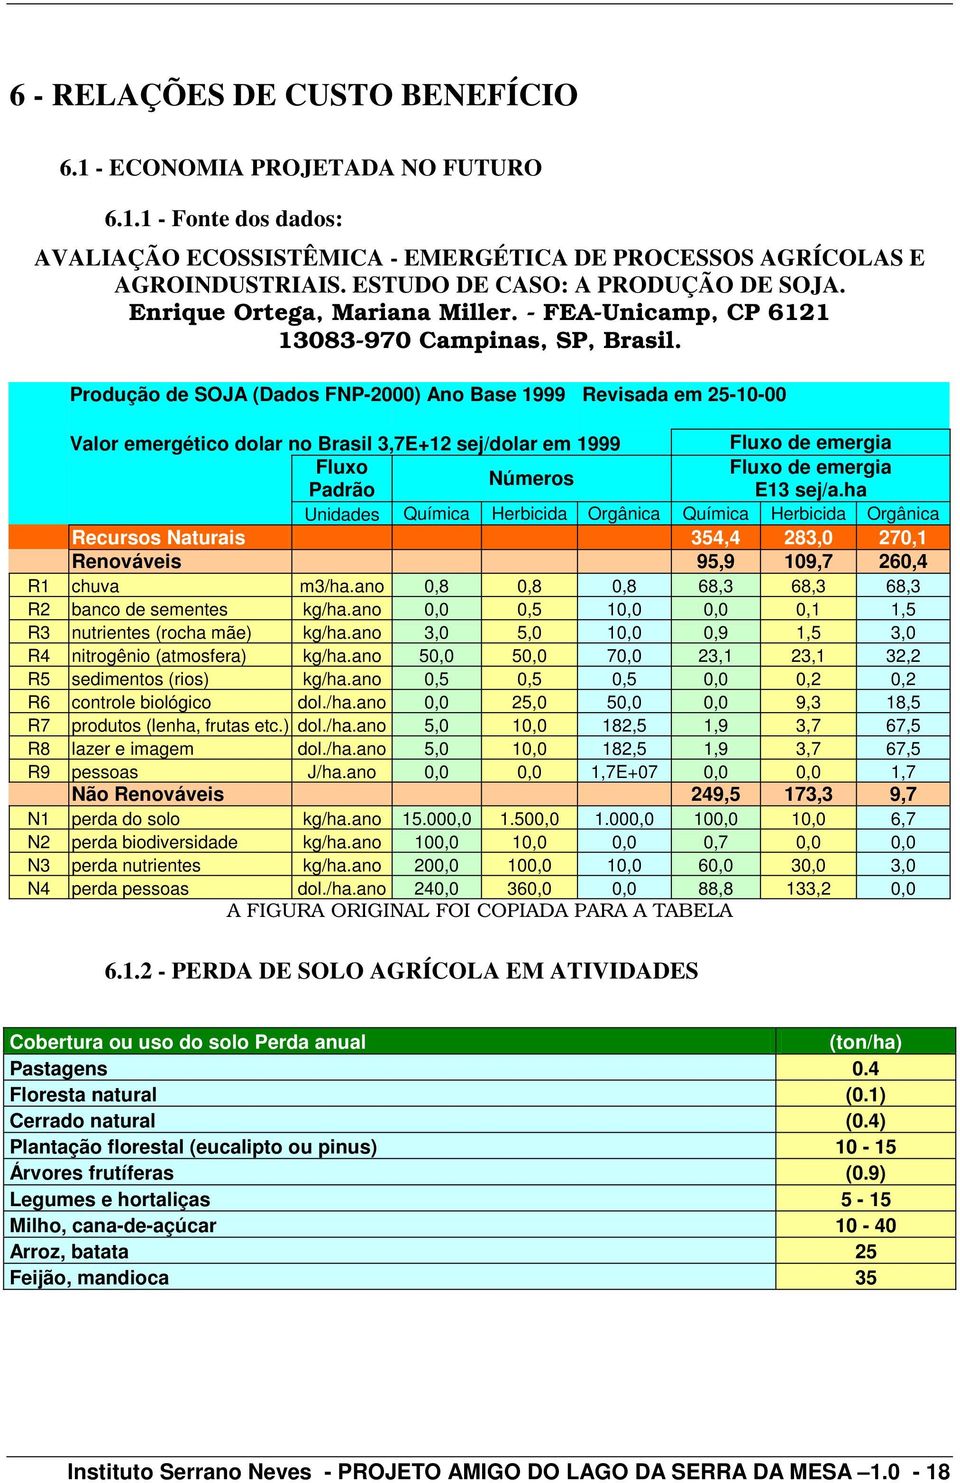 Produção de SOJA (Dados FNP-2000) Ano Base 1999 Revisada em 25-10-00 Valor emergético dolar no Brasil 3,7E+12 sej/dolar em 1999 Fluxo de emergia Fluxo Fluxo de emergia Números Padrão E13 sej/a.